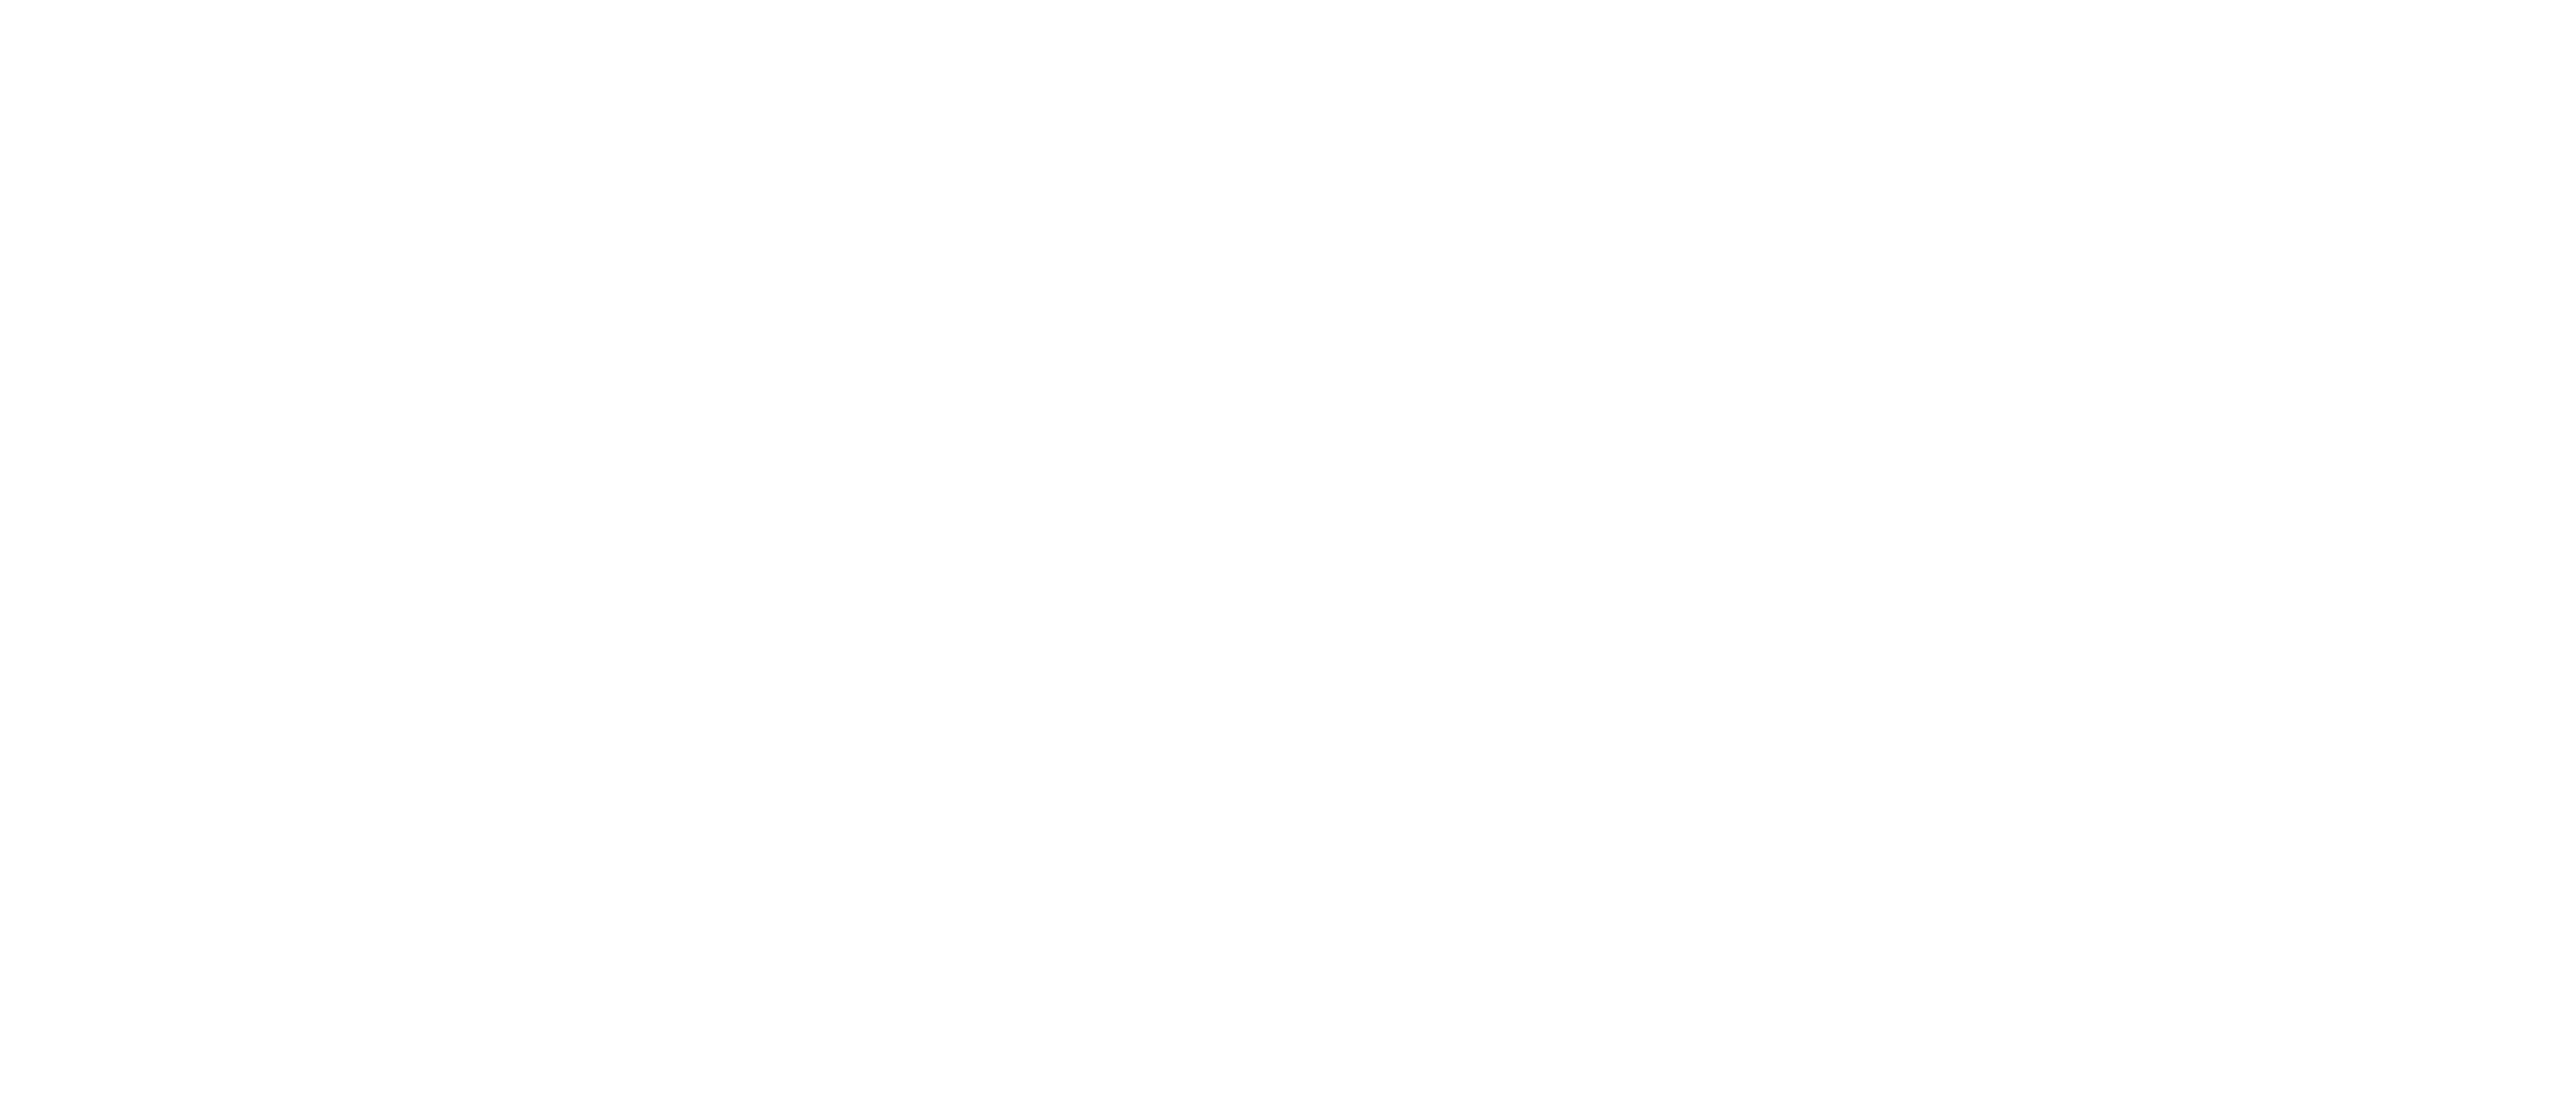 Experteq-_-TAS-Logo_ALL-REV-01-n